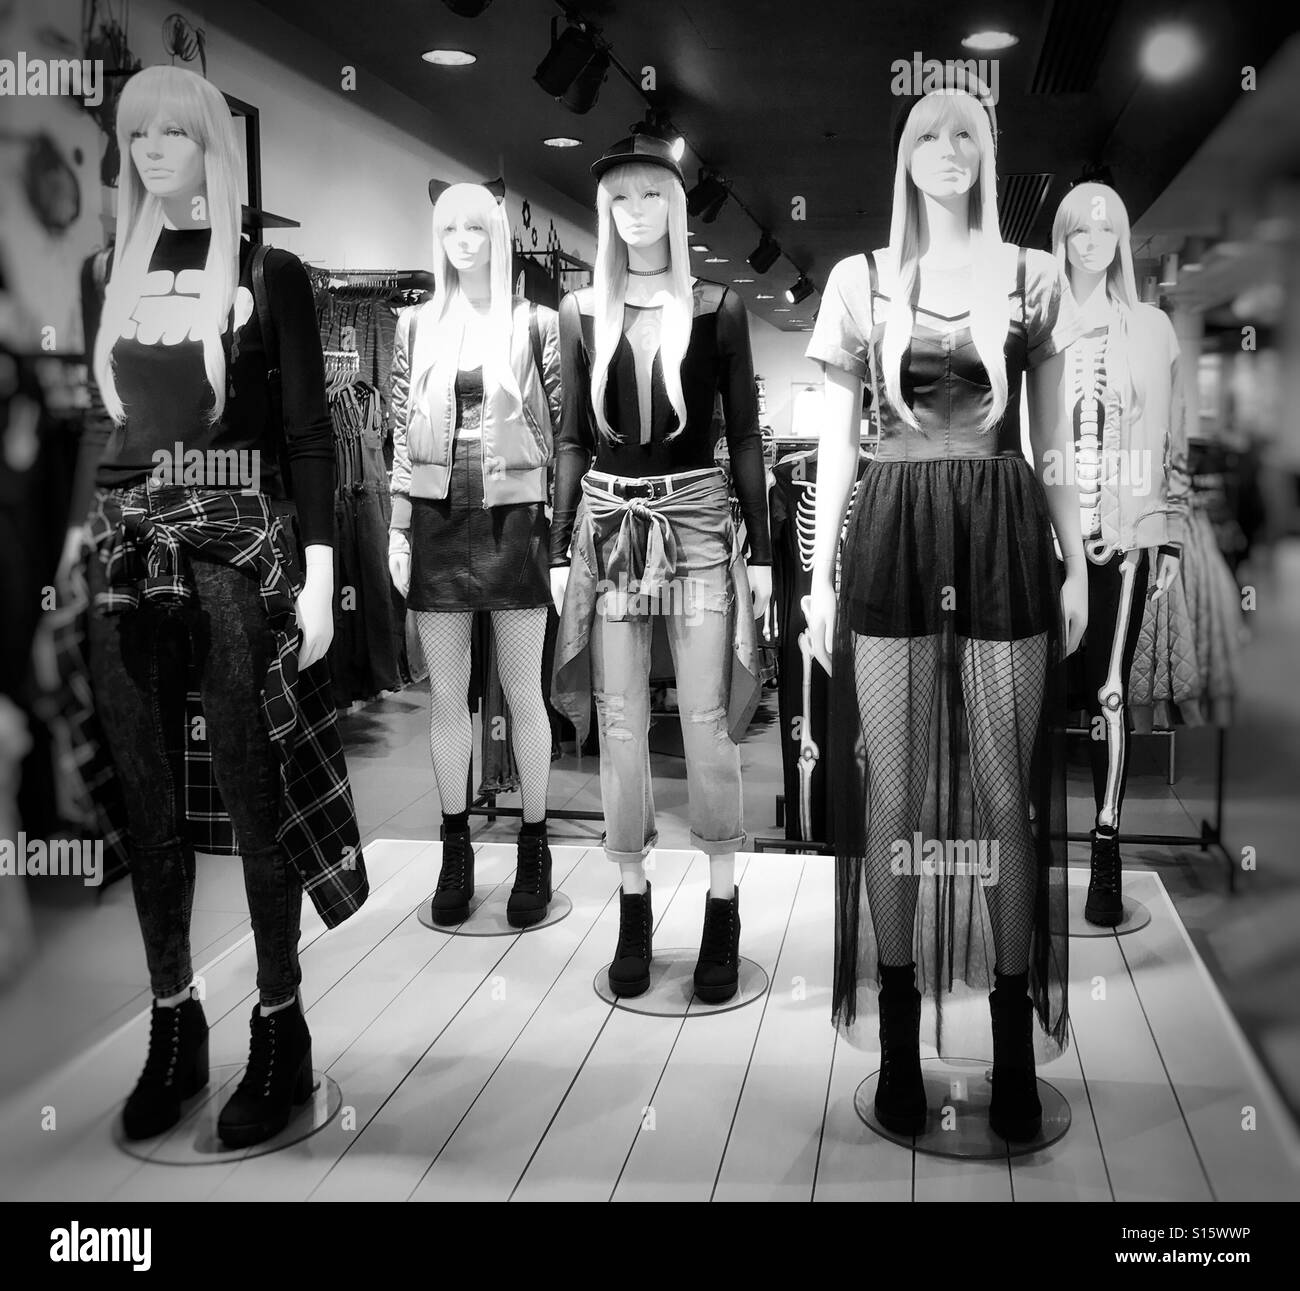 Im Store-Display von weiblichen Schaufensterpuppen tragen modische Kleidung Stockfoto